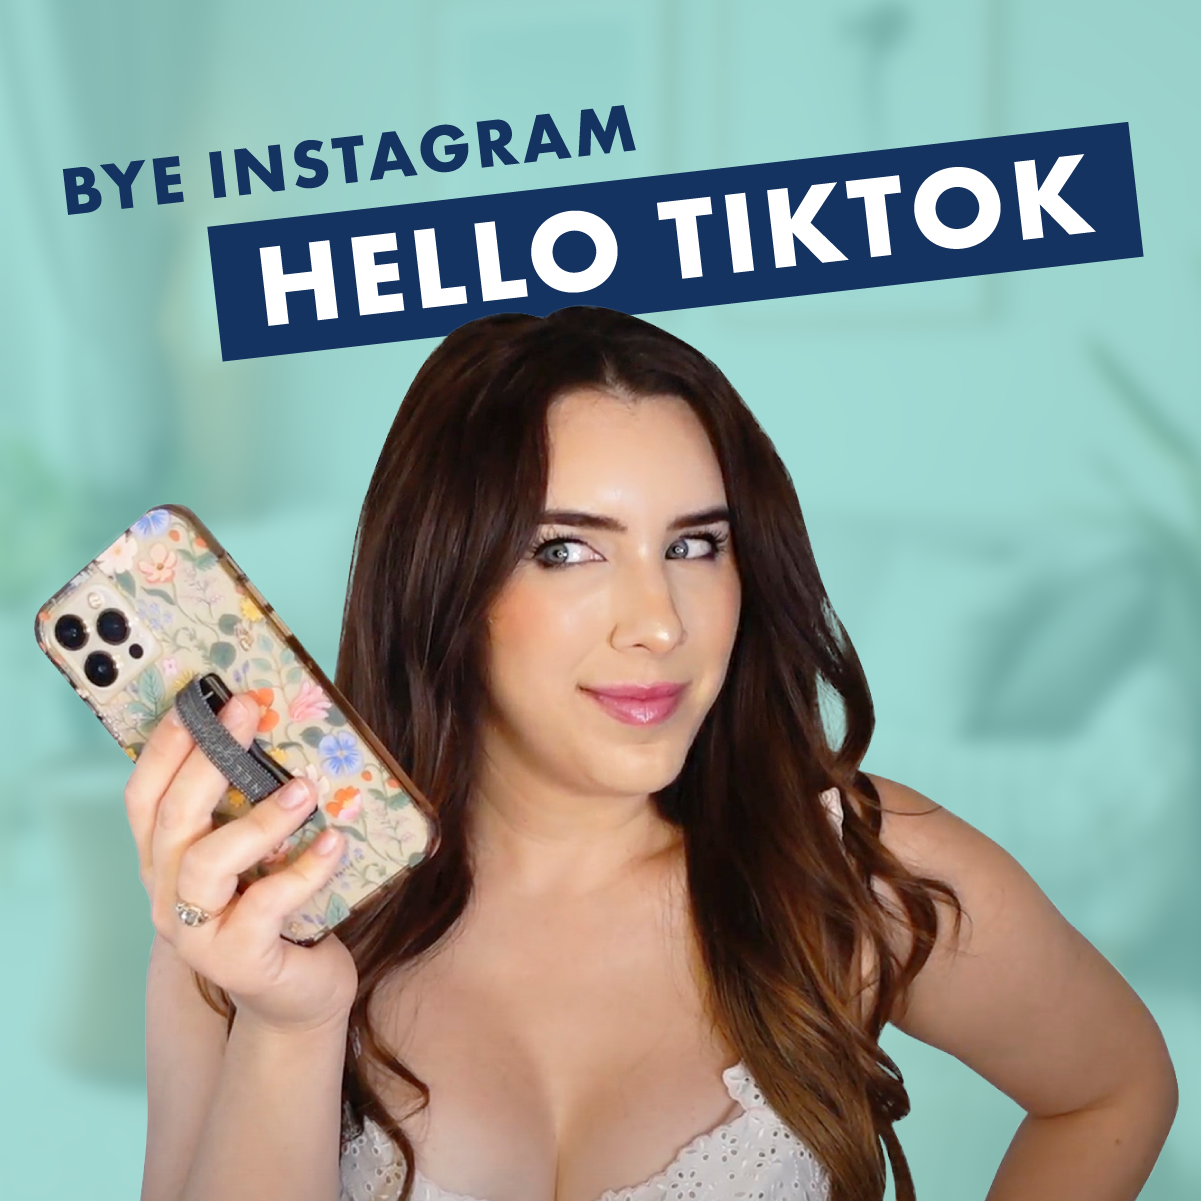 Bye Instagram Hello Tiktok